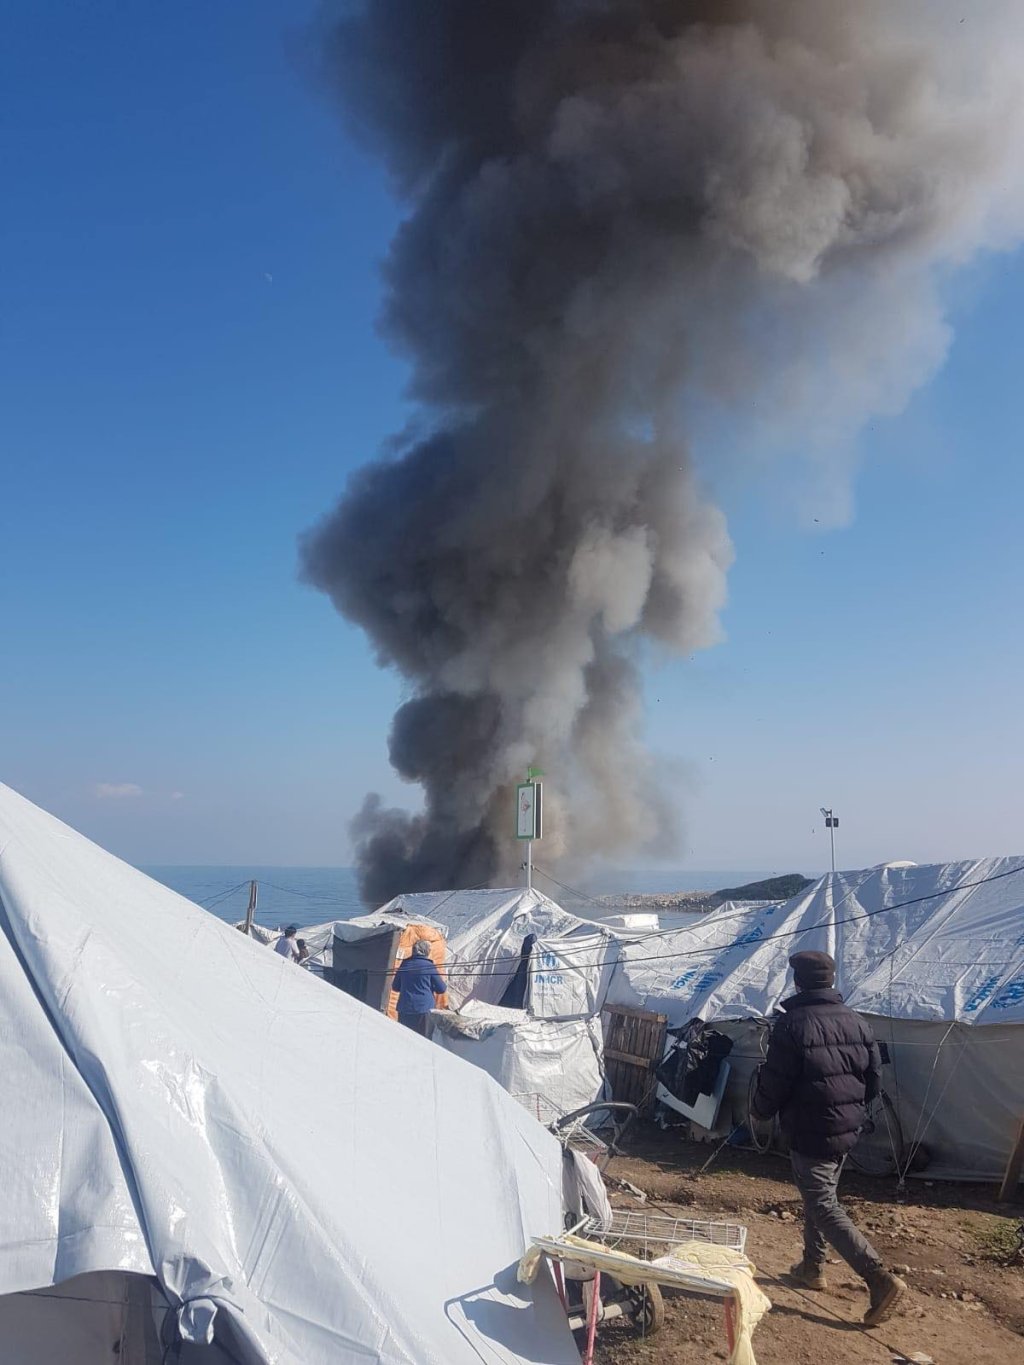 آتش سوزی در اردوگاه کاراتیپه در جزیر لیسبوس یونان (اواسط فبروری ۲۰۲۱) عکس: پناهجویان داخل اردوگاه 